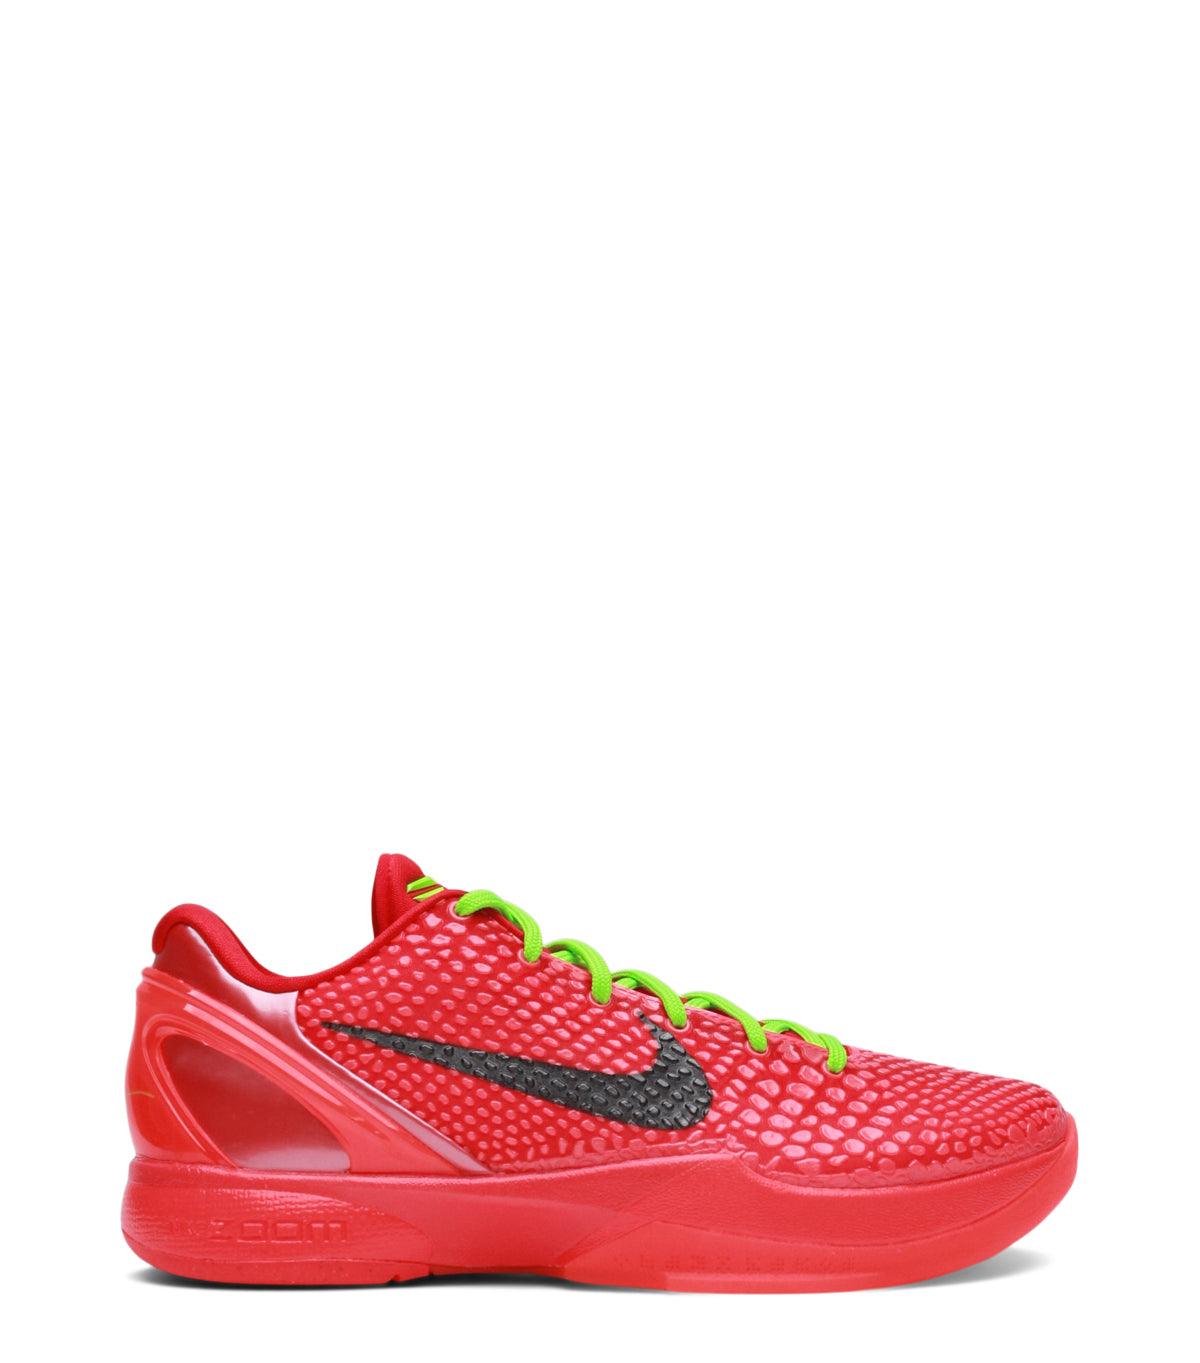 12.15.23 Nike Kobe 6 Protro Red Green